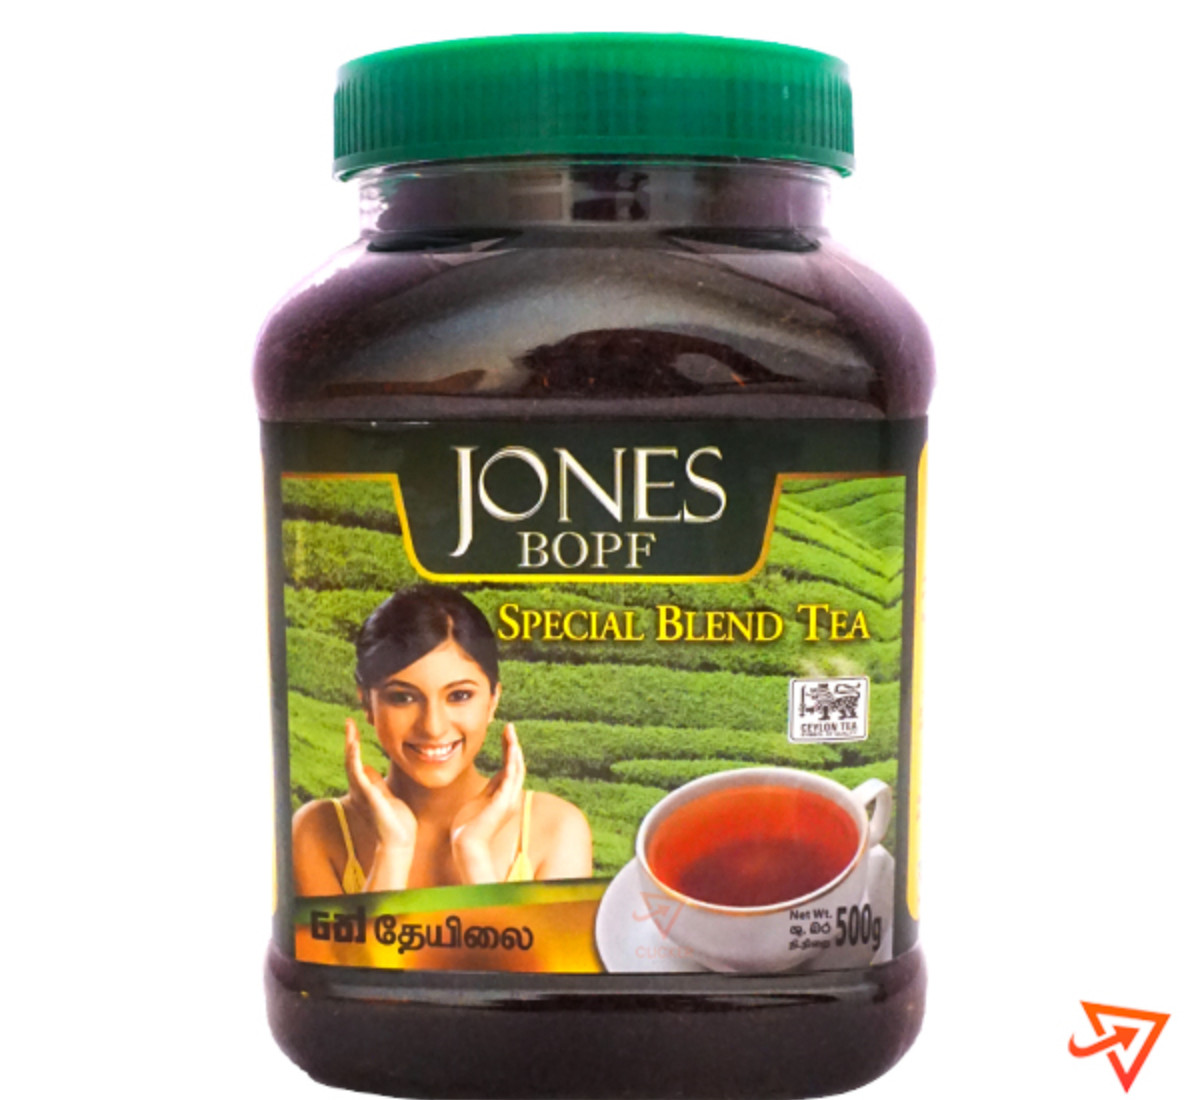 Clicker product 500g JONES BOPF Special Blend Tea 921